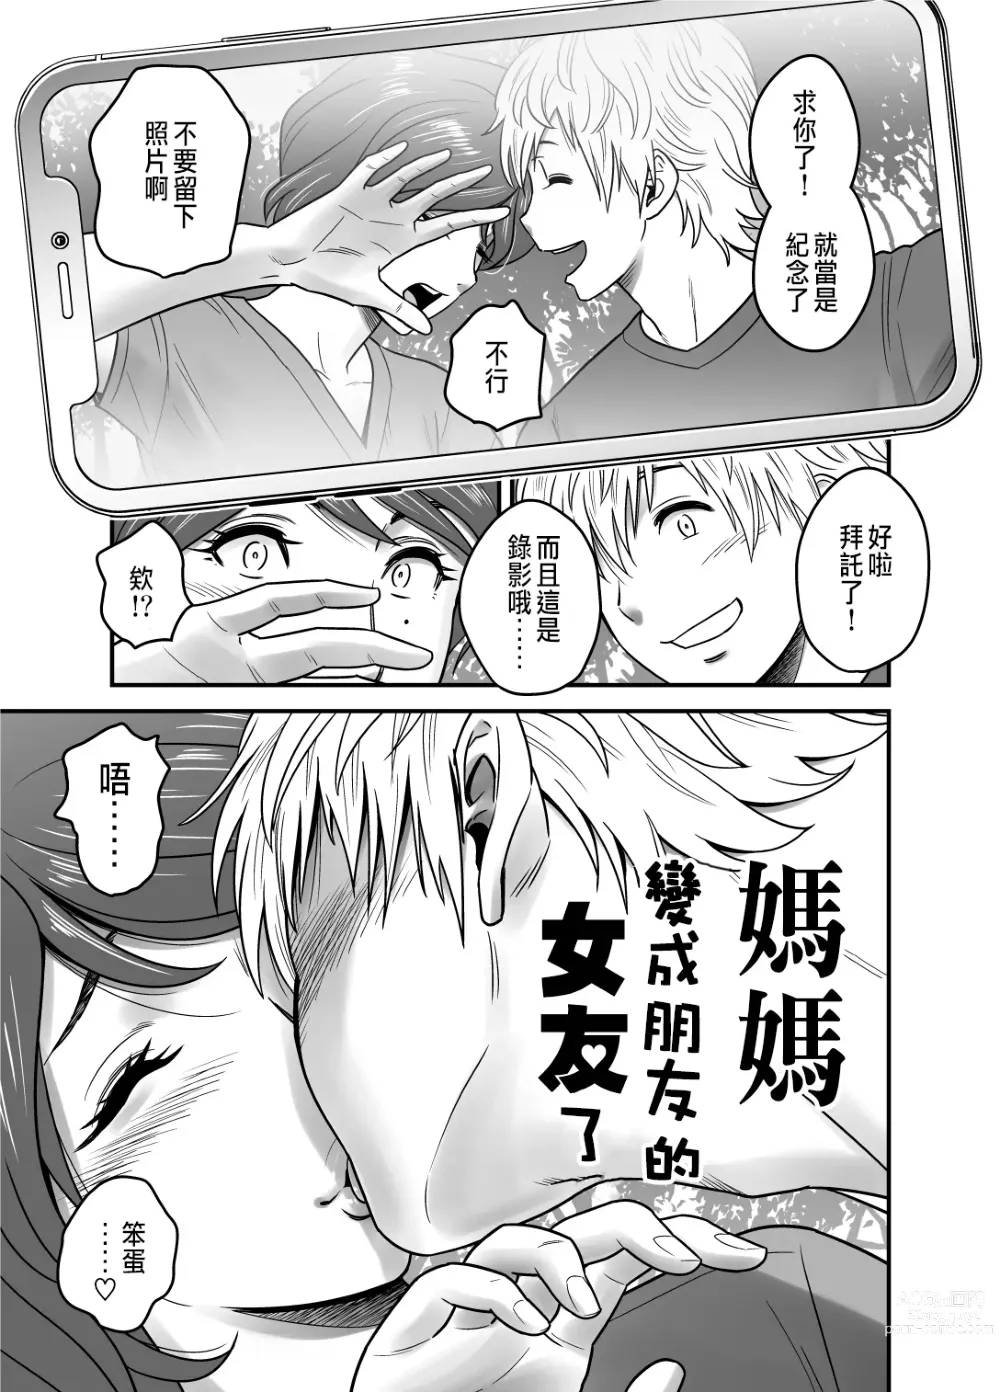 Page 5 of manga 母が友カノになったので